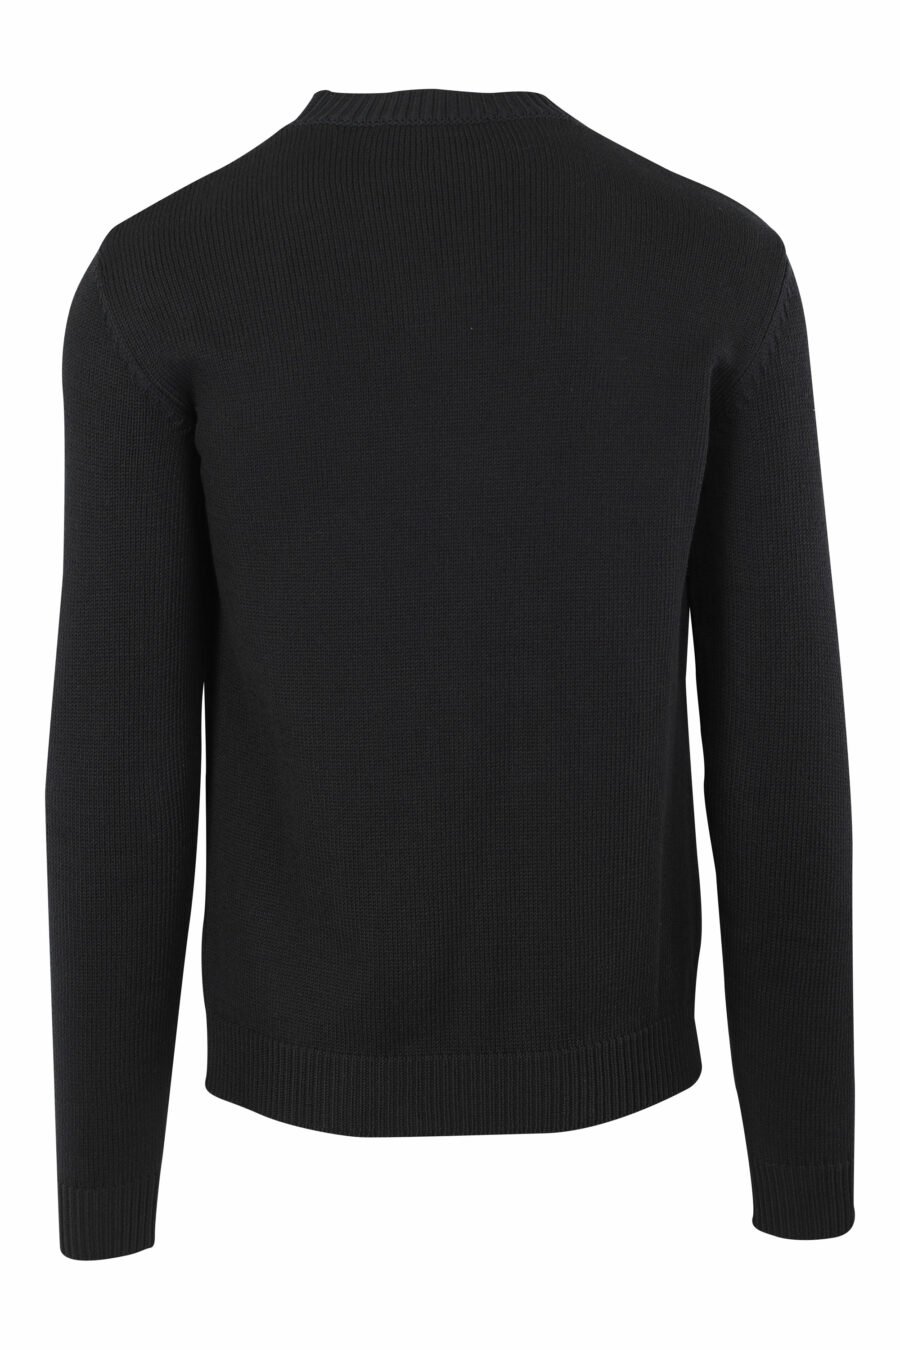 Sweat tricoté noir avec maxilogue monochrome - IMG 9662